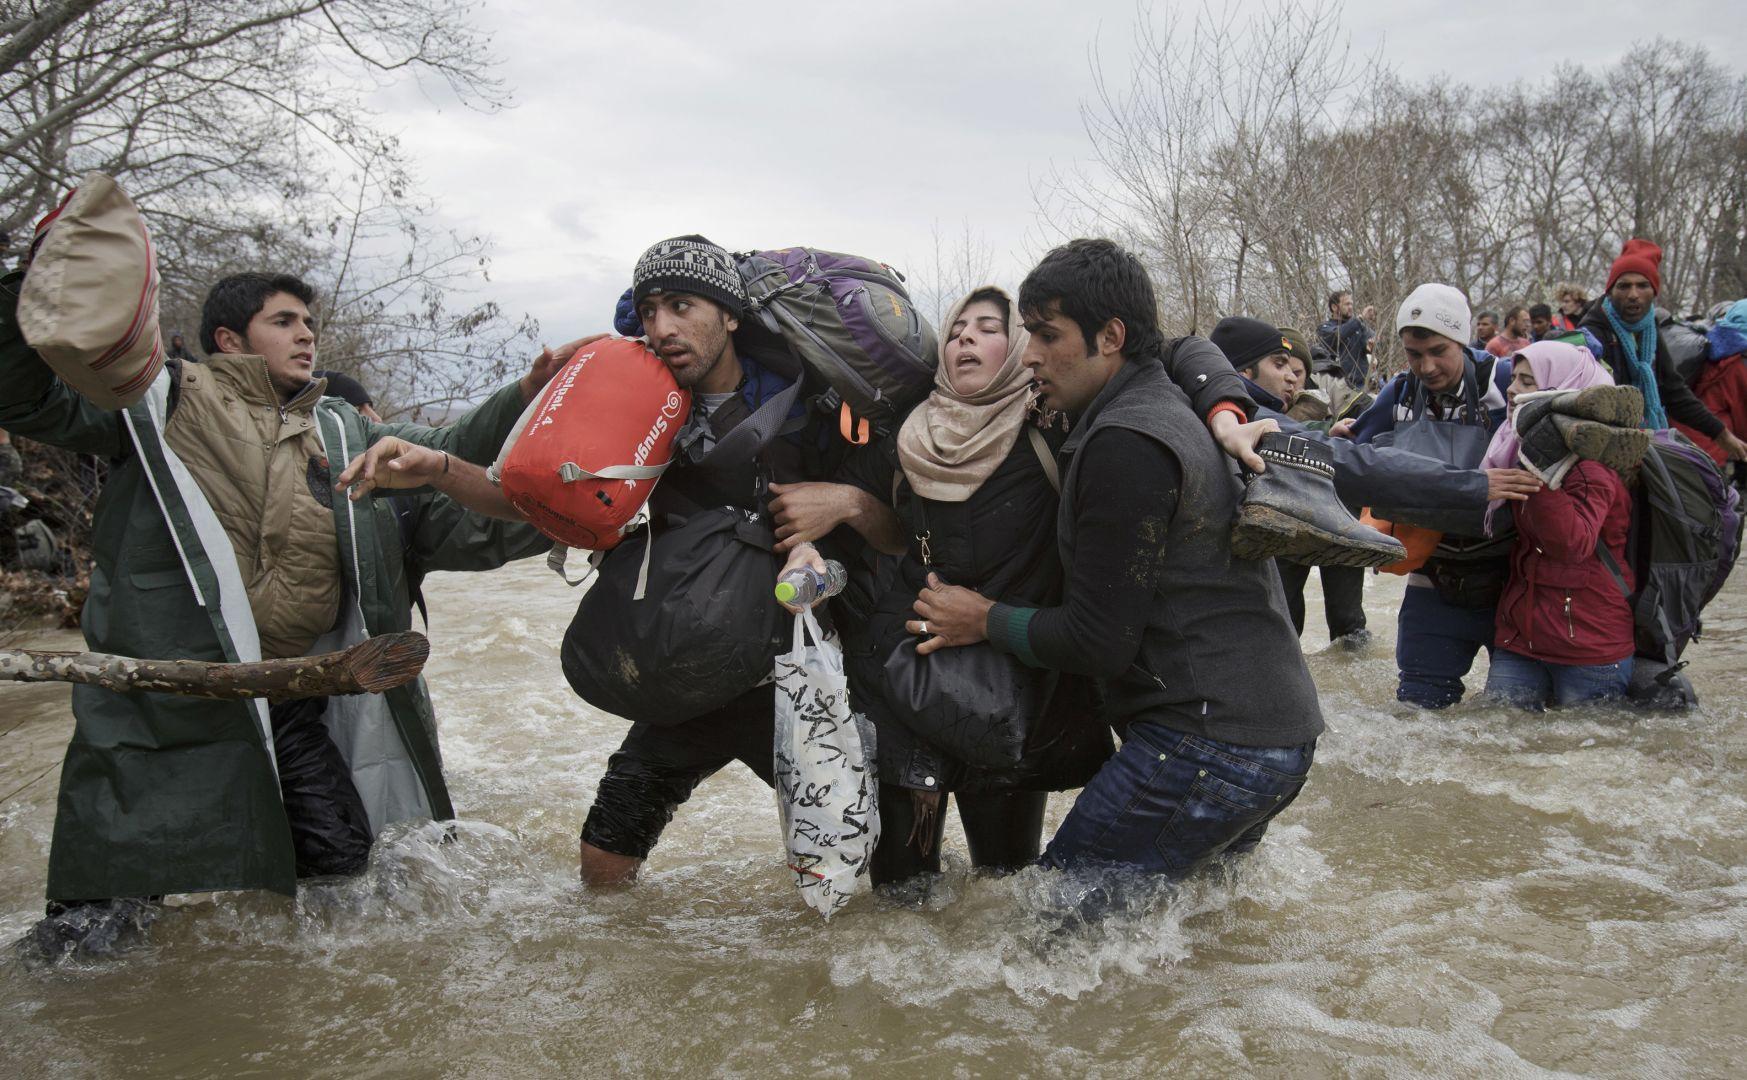 الجازئزة الثانية فردى - لاجئون يحاولون الوصول إلى مقدونيا